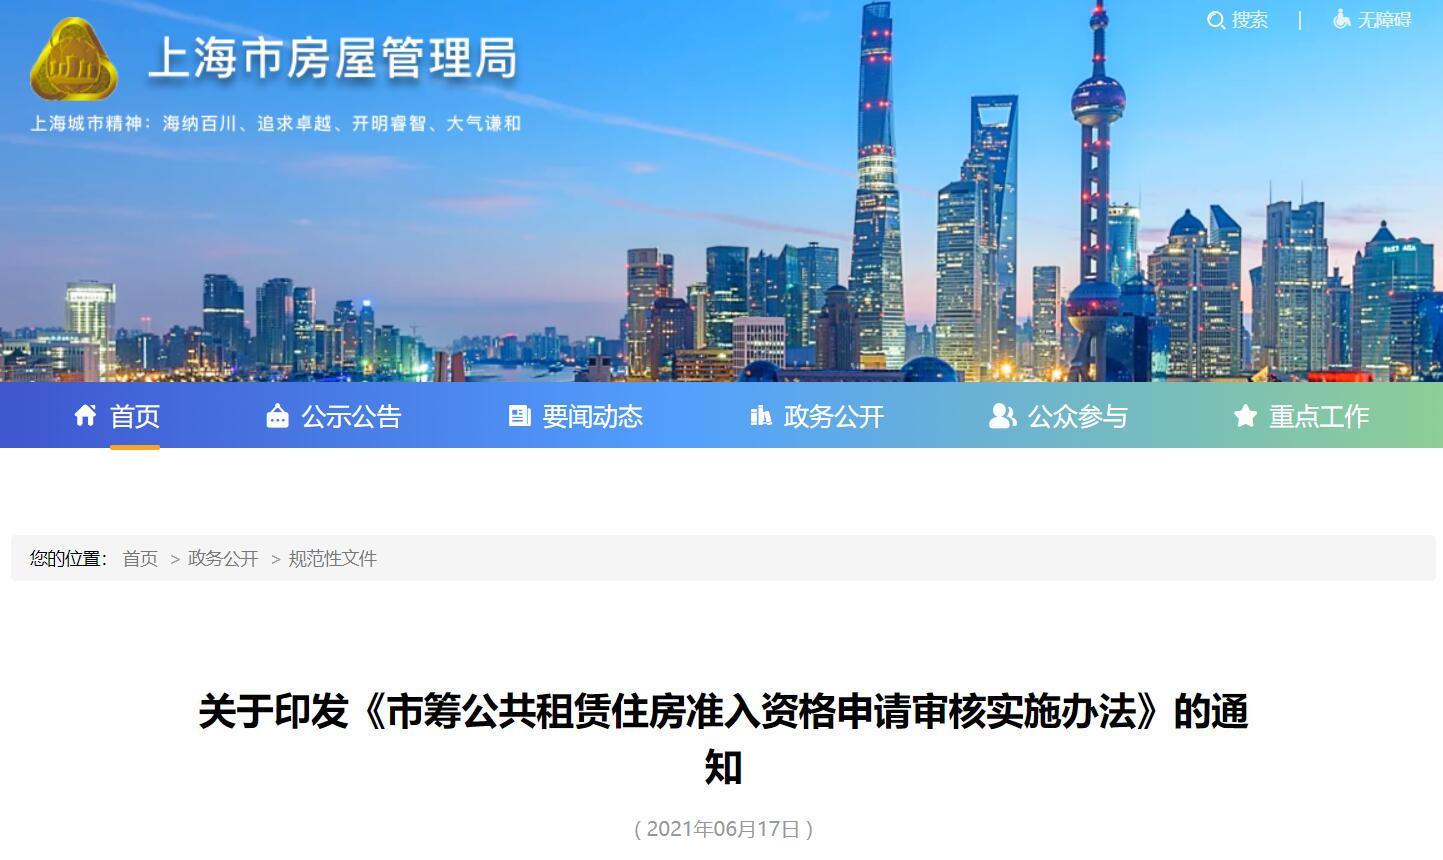 《上海市筹公租房准入资格申请审核实施办法》2021年7月1日起实施